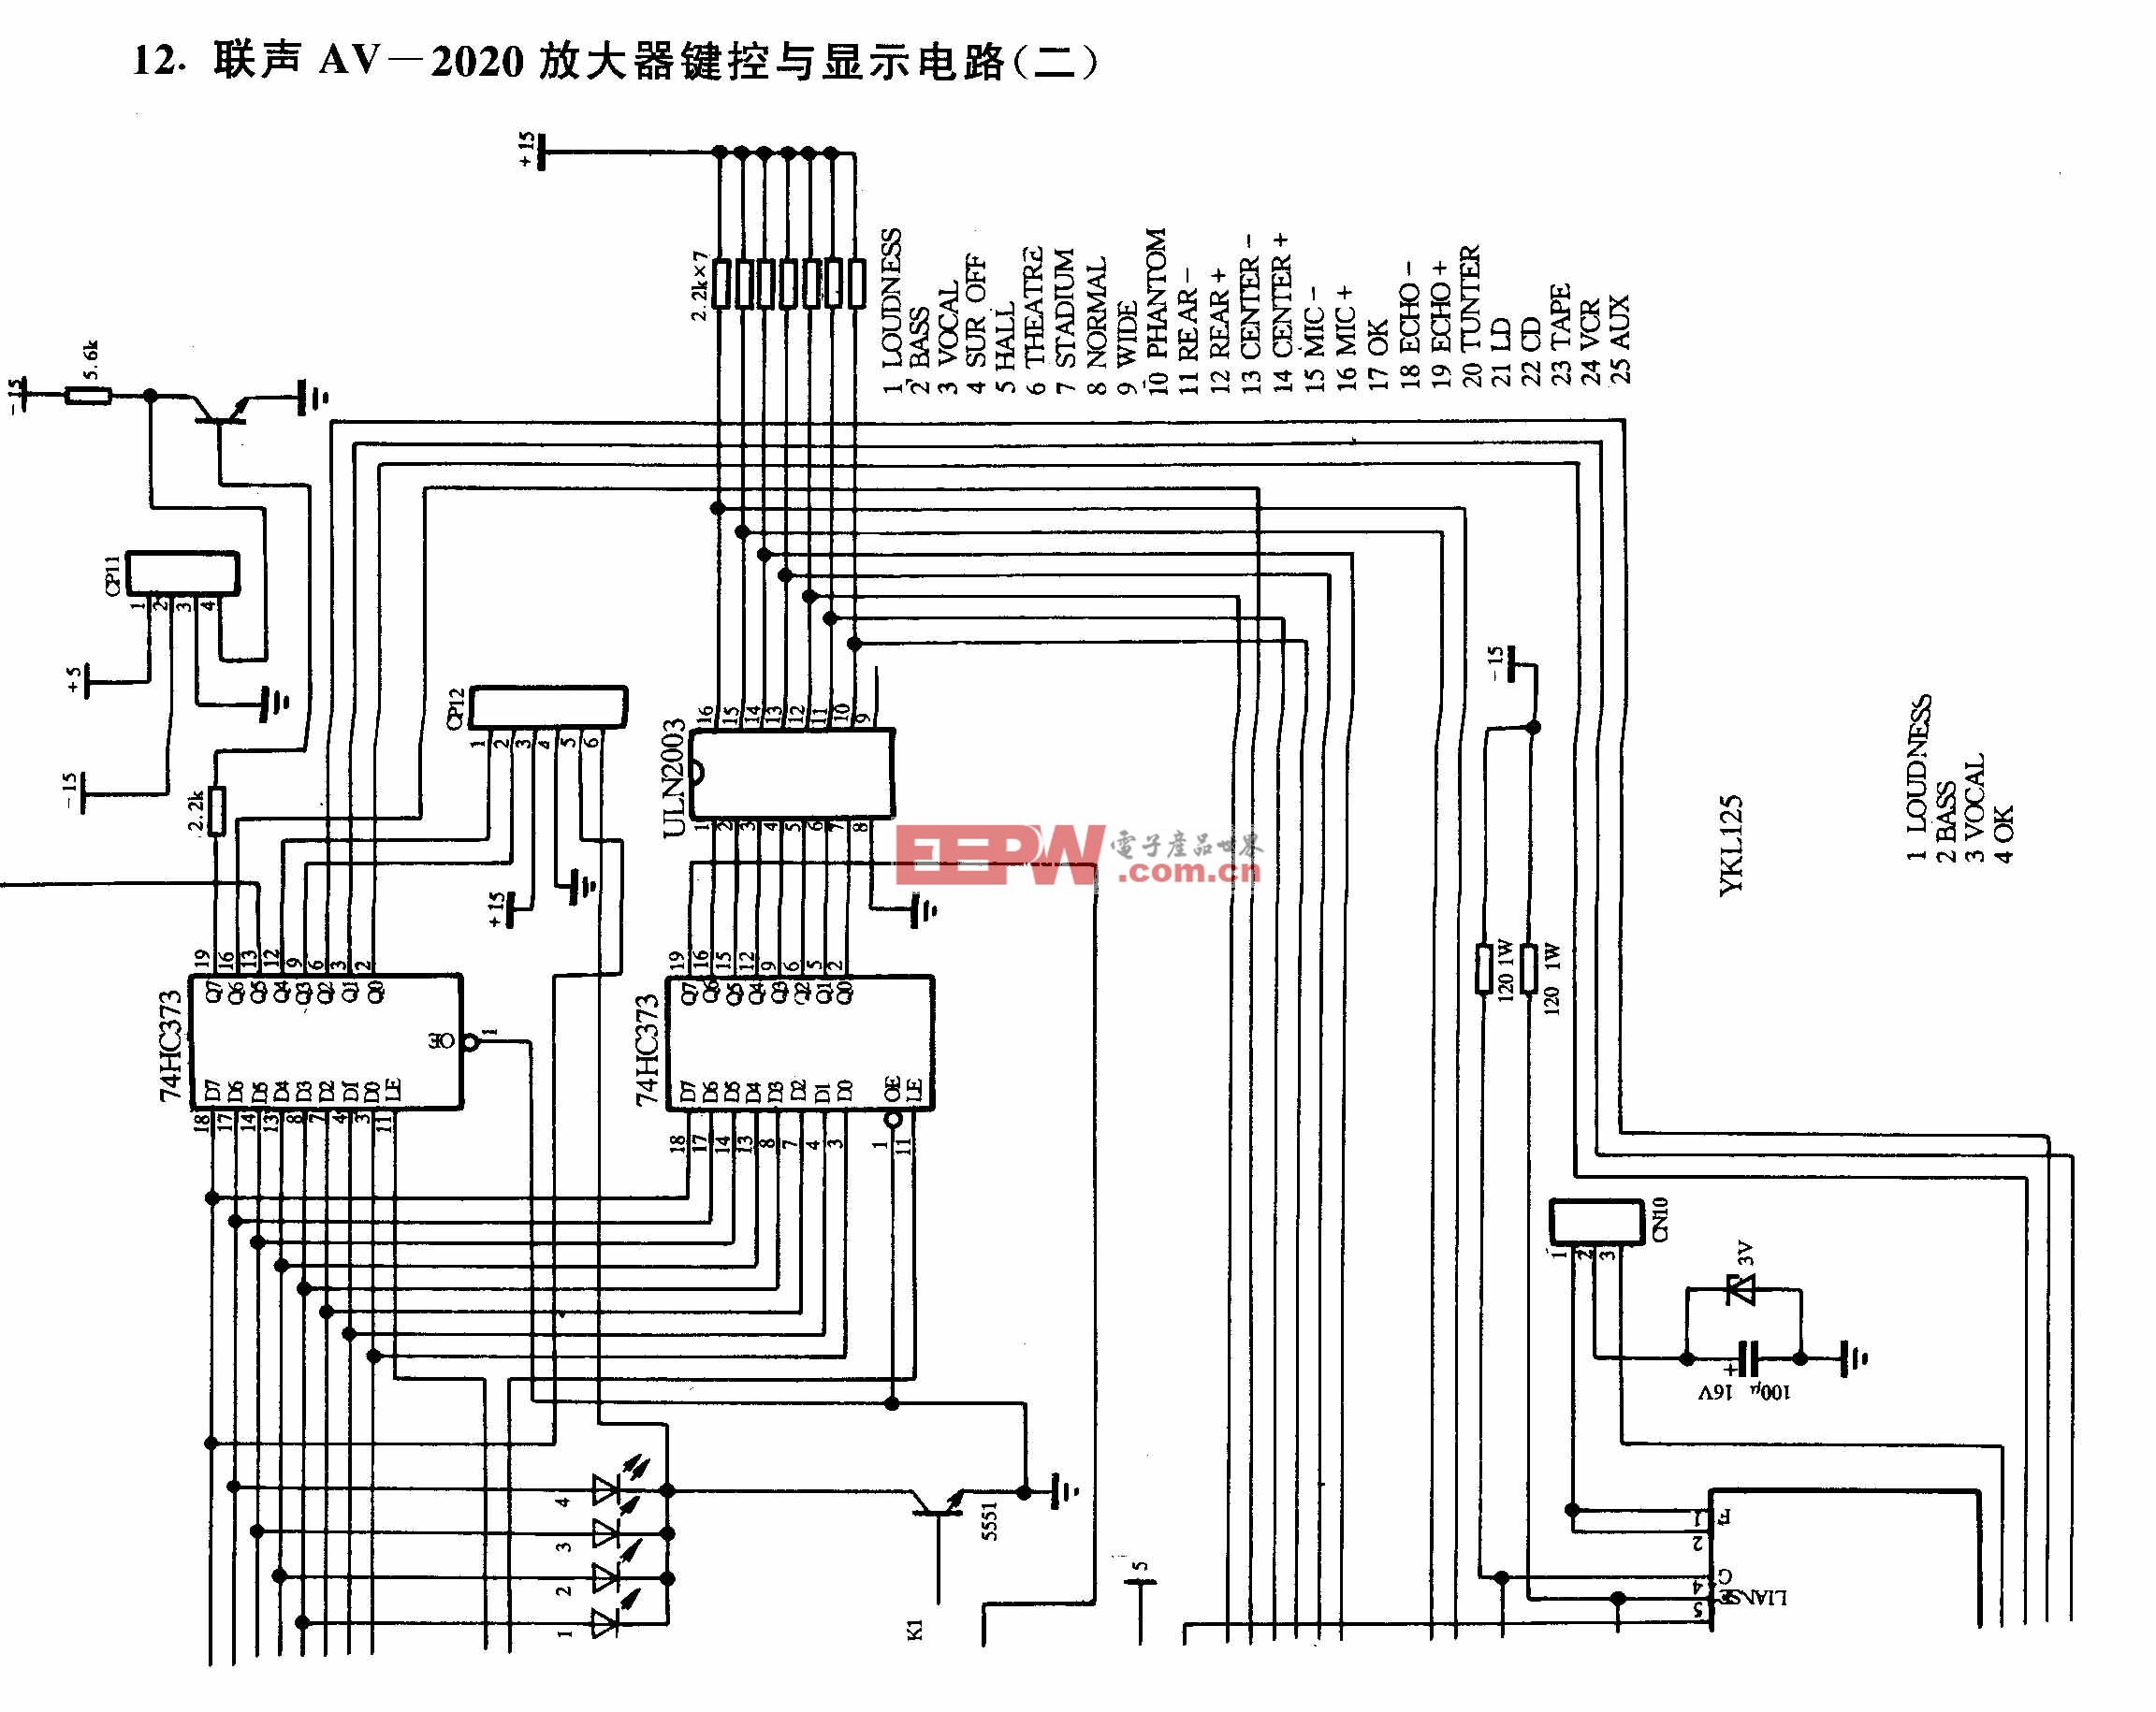 联声AV-2020放大器键控与显示电路（二）